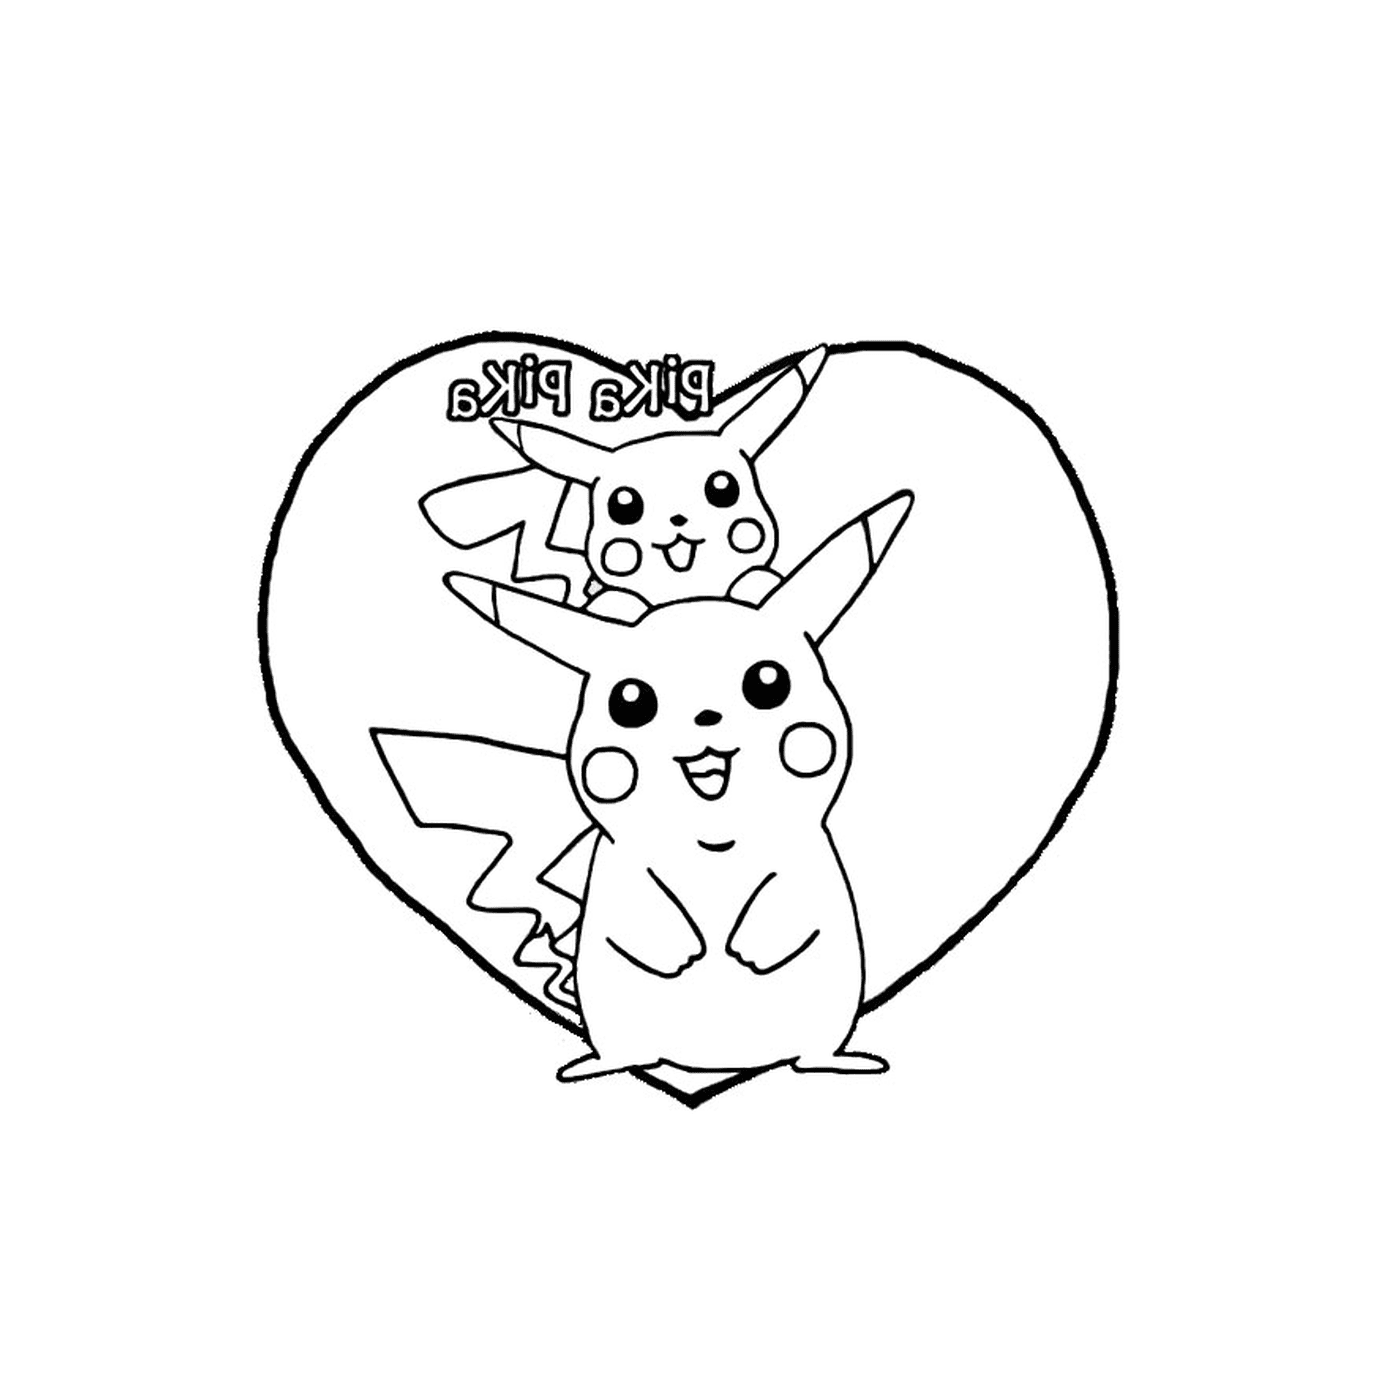  Pikachu e amore nel cuore 